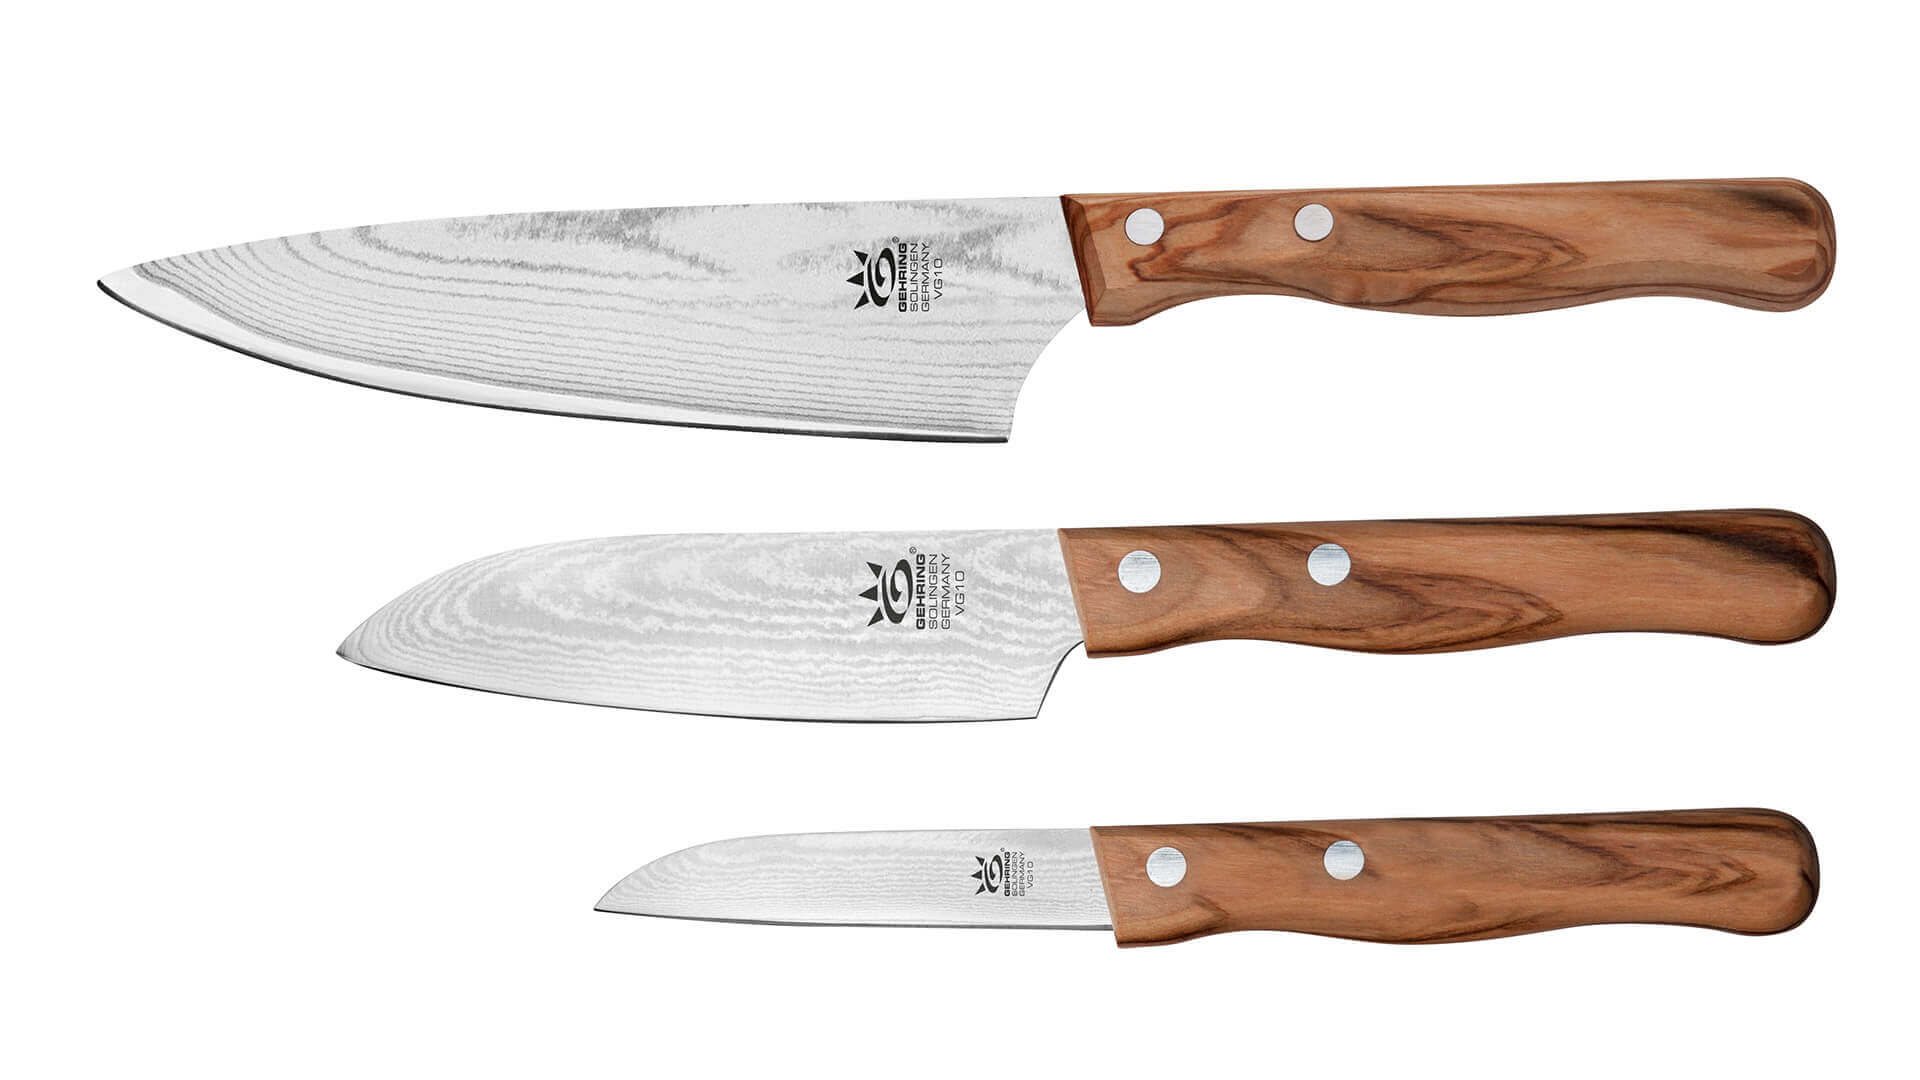 gehring-damask-knife-set-buy-chef-knives-santoku-knife-vegetable-knife-made-of-damascus-steel